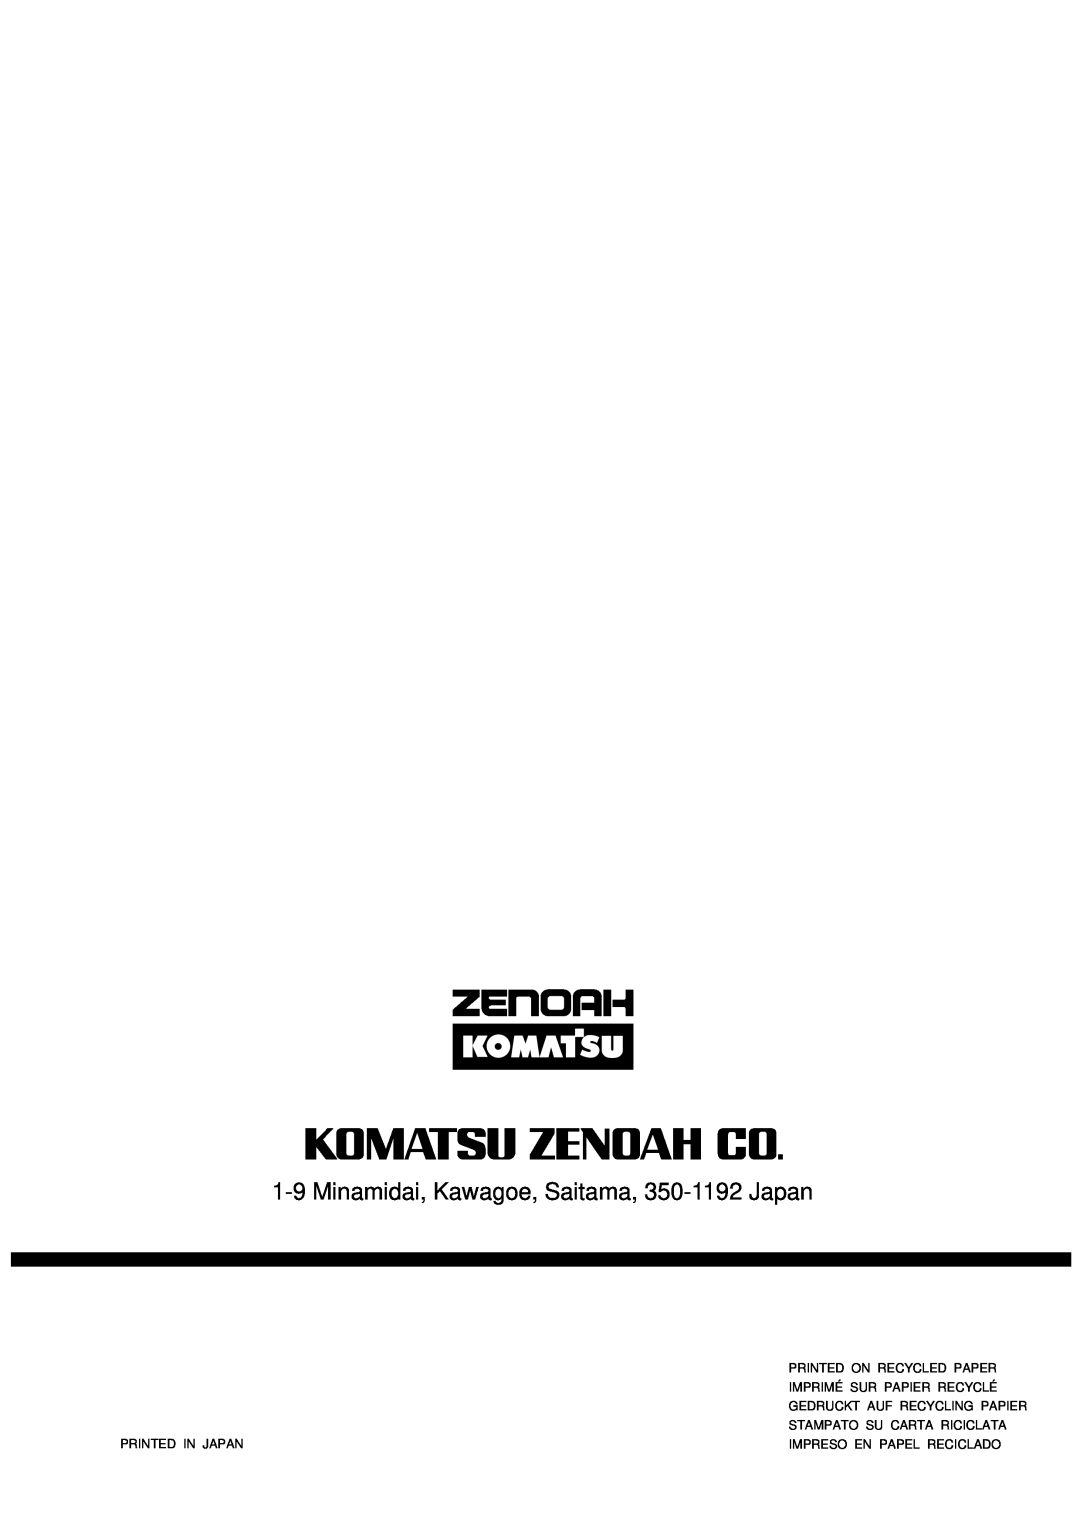 Zenoah G451/G4500 1-9Minamidai, Kawagoe, Saitama, 350-1192Japan, Printed On Recycled Paper, Imprimé Sur Papier Recyclé 